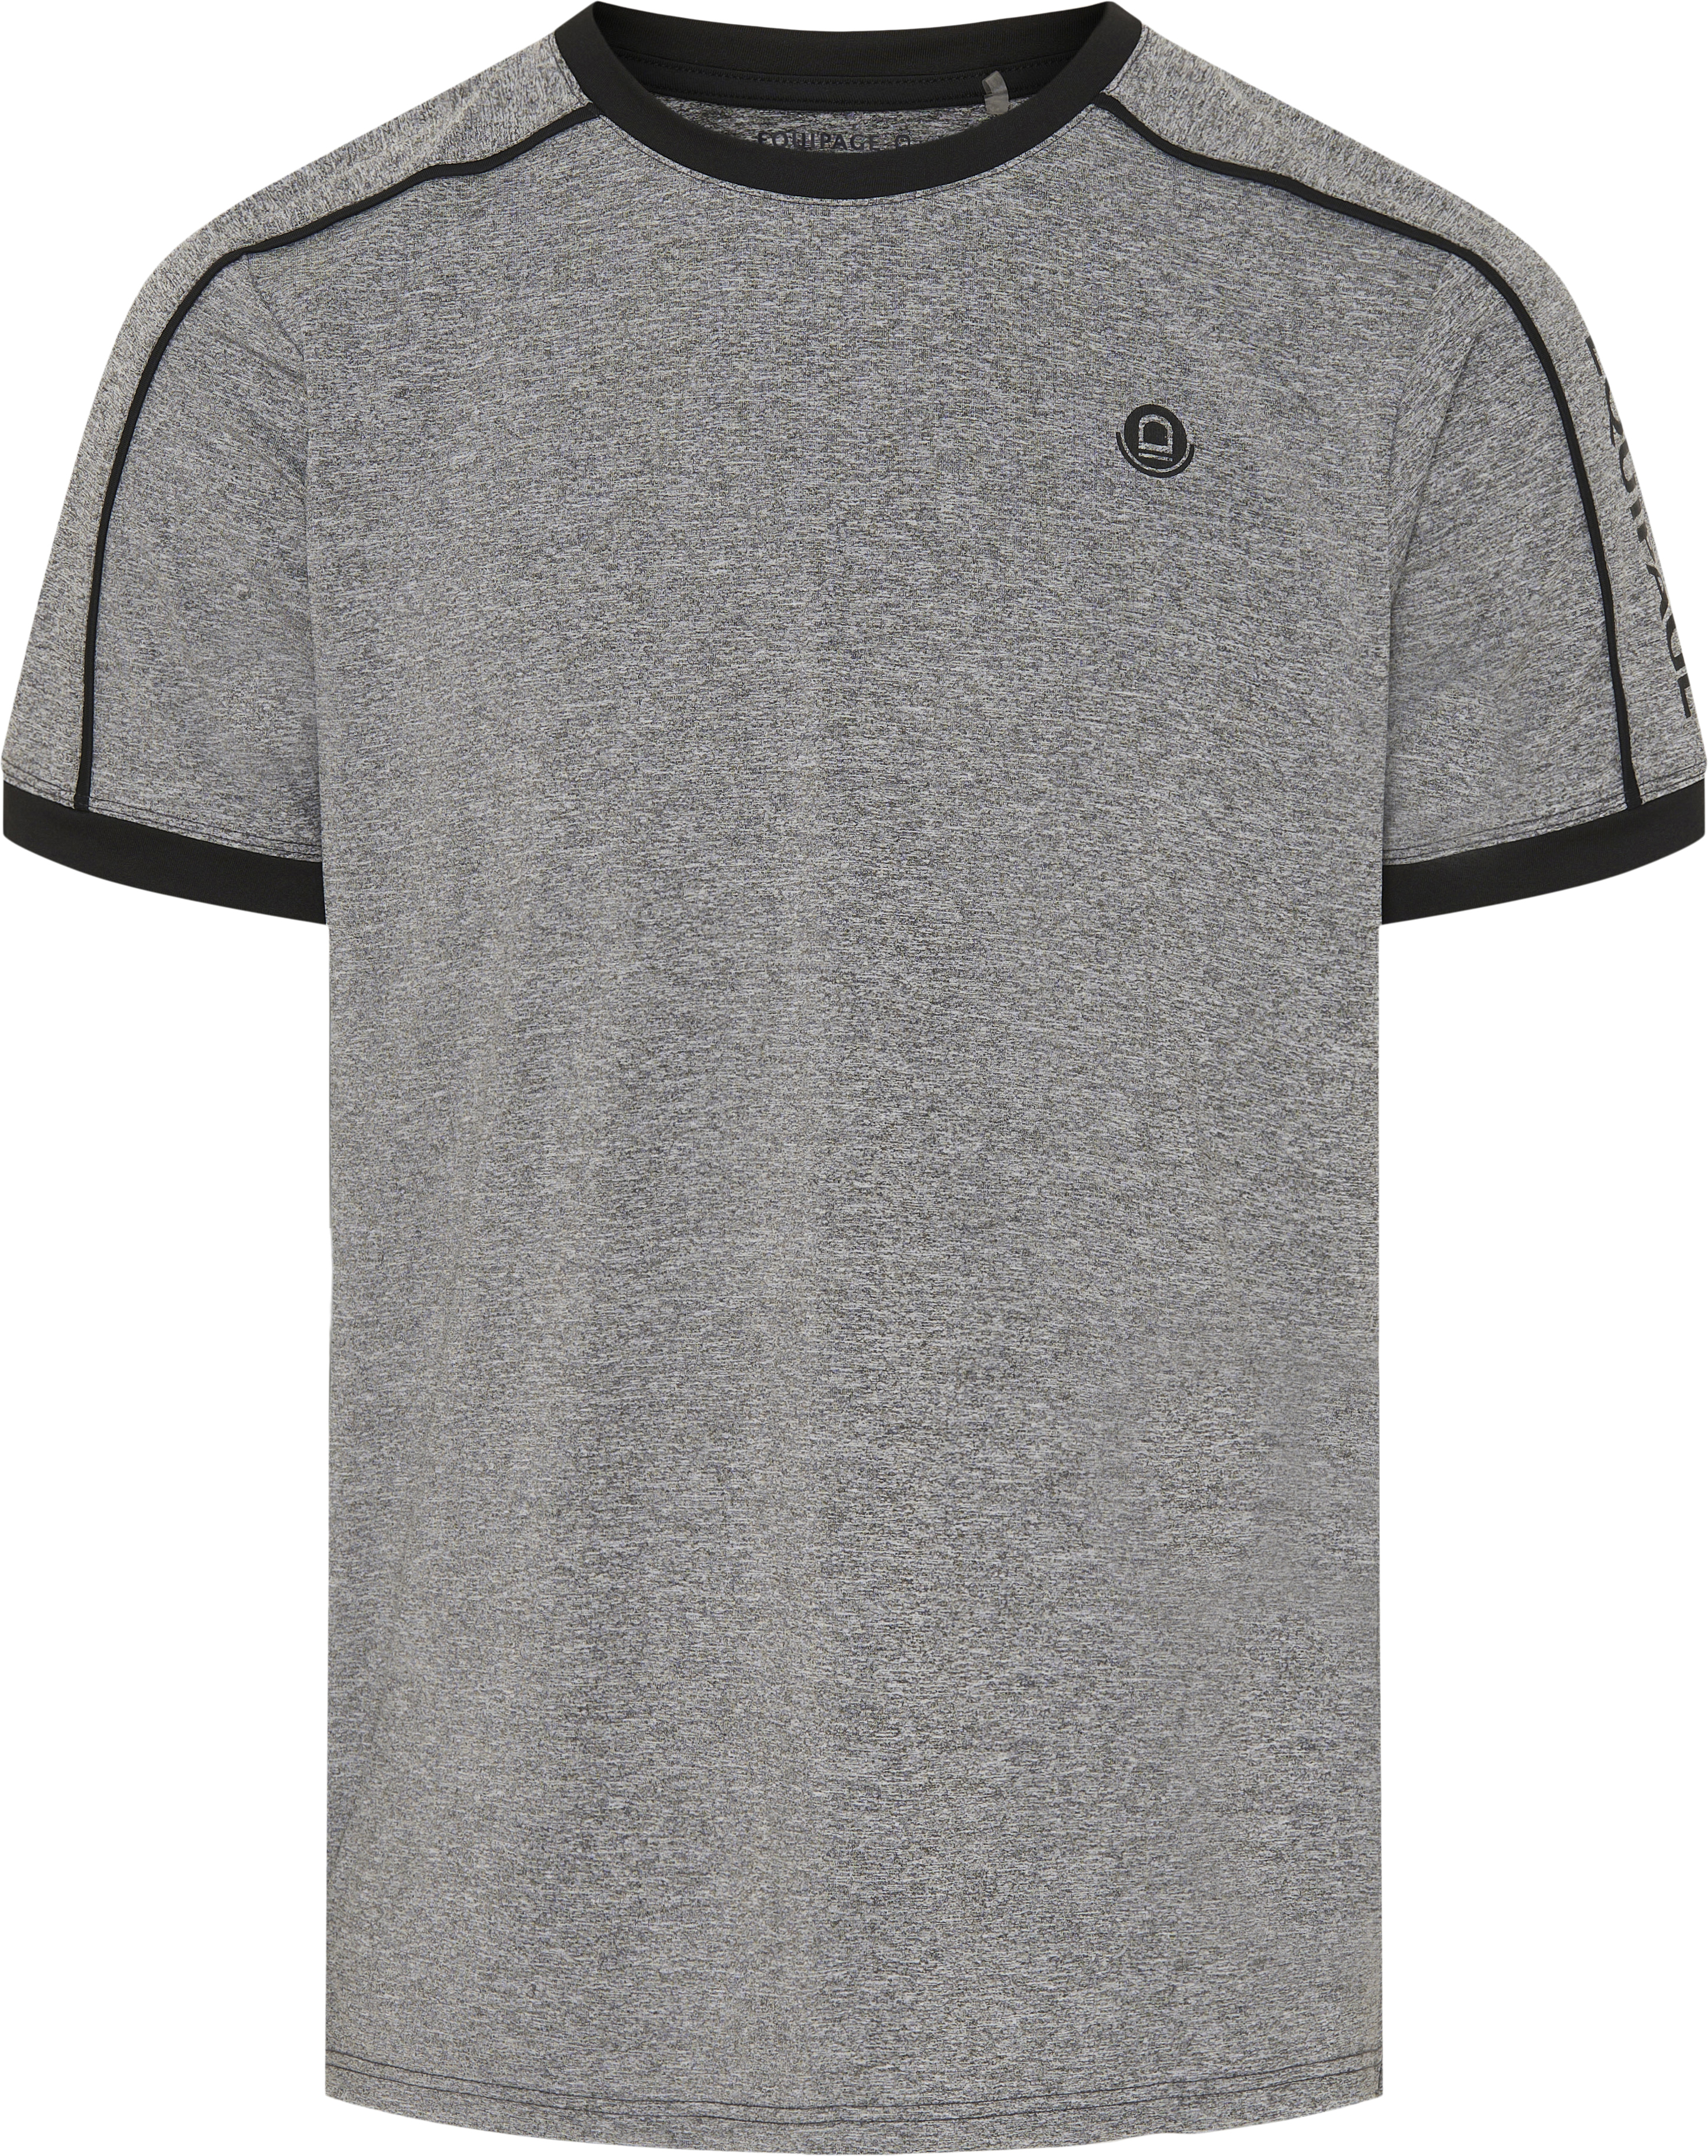 Equipage MEN Morgan T-shirt - Grey Melange (M)